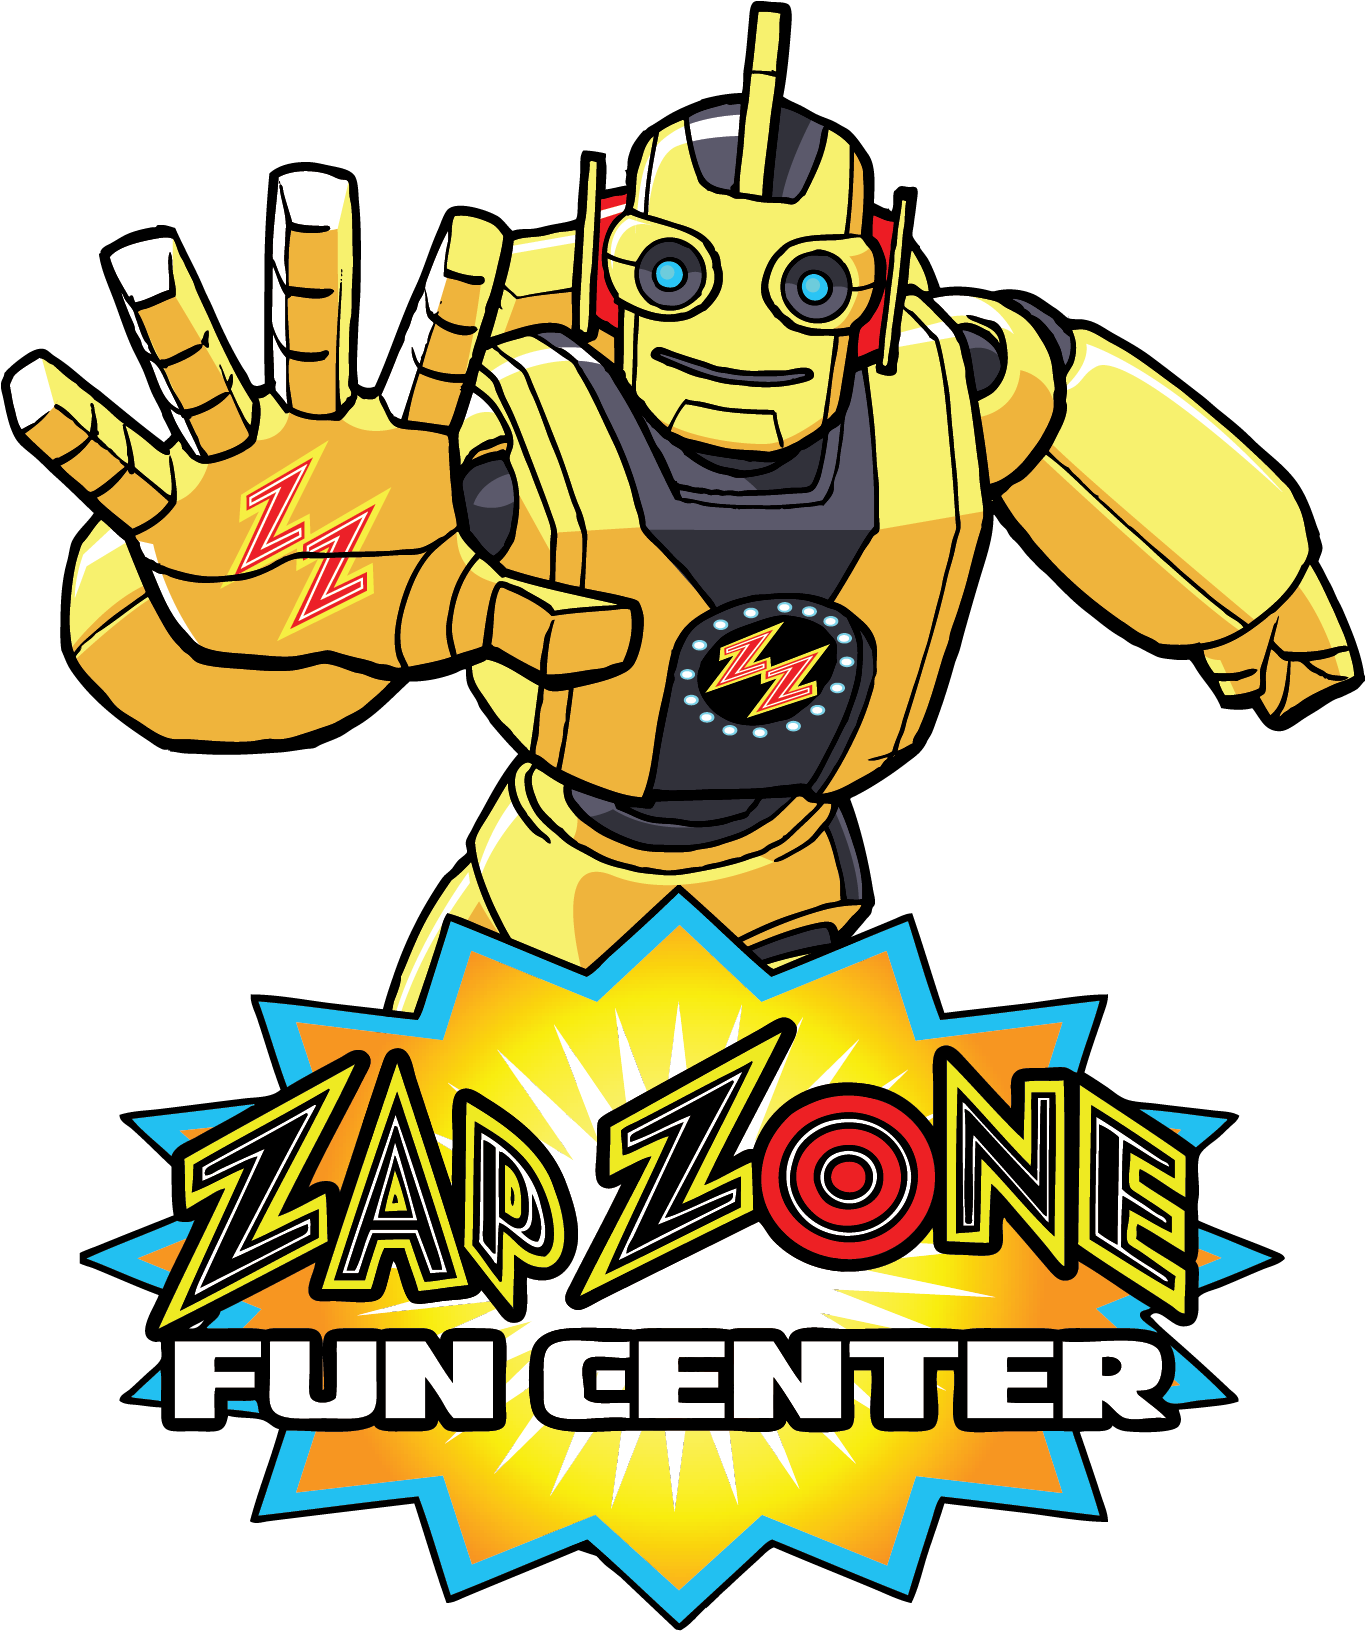 Teen Finale Party - Zap Zone Logo (1364x1665)